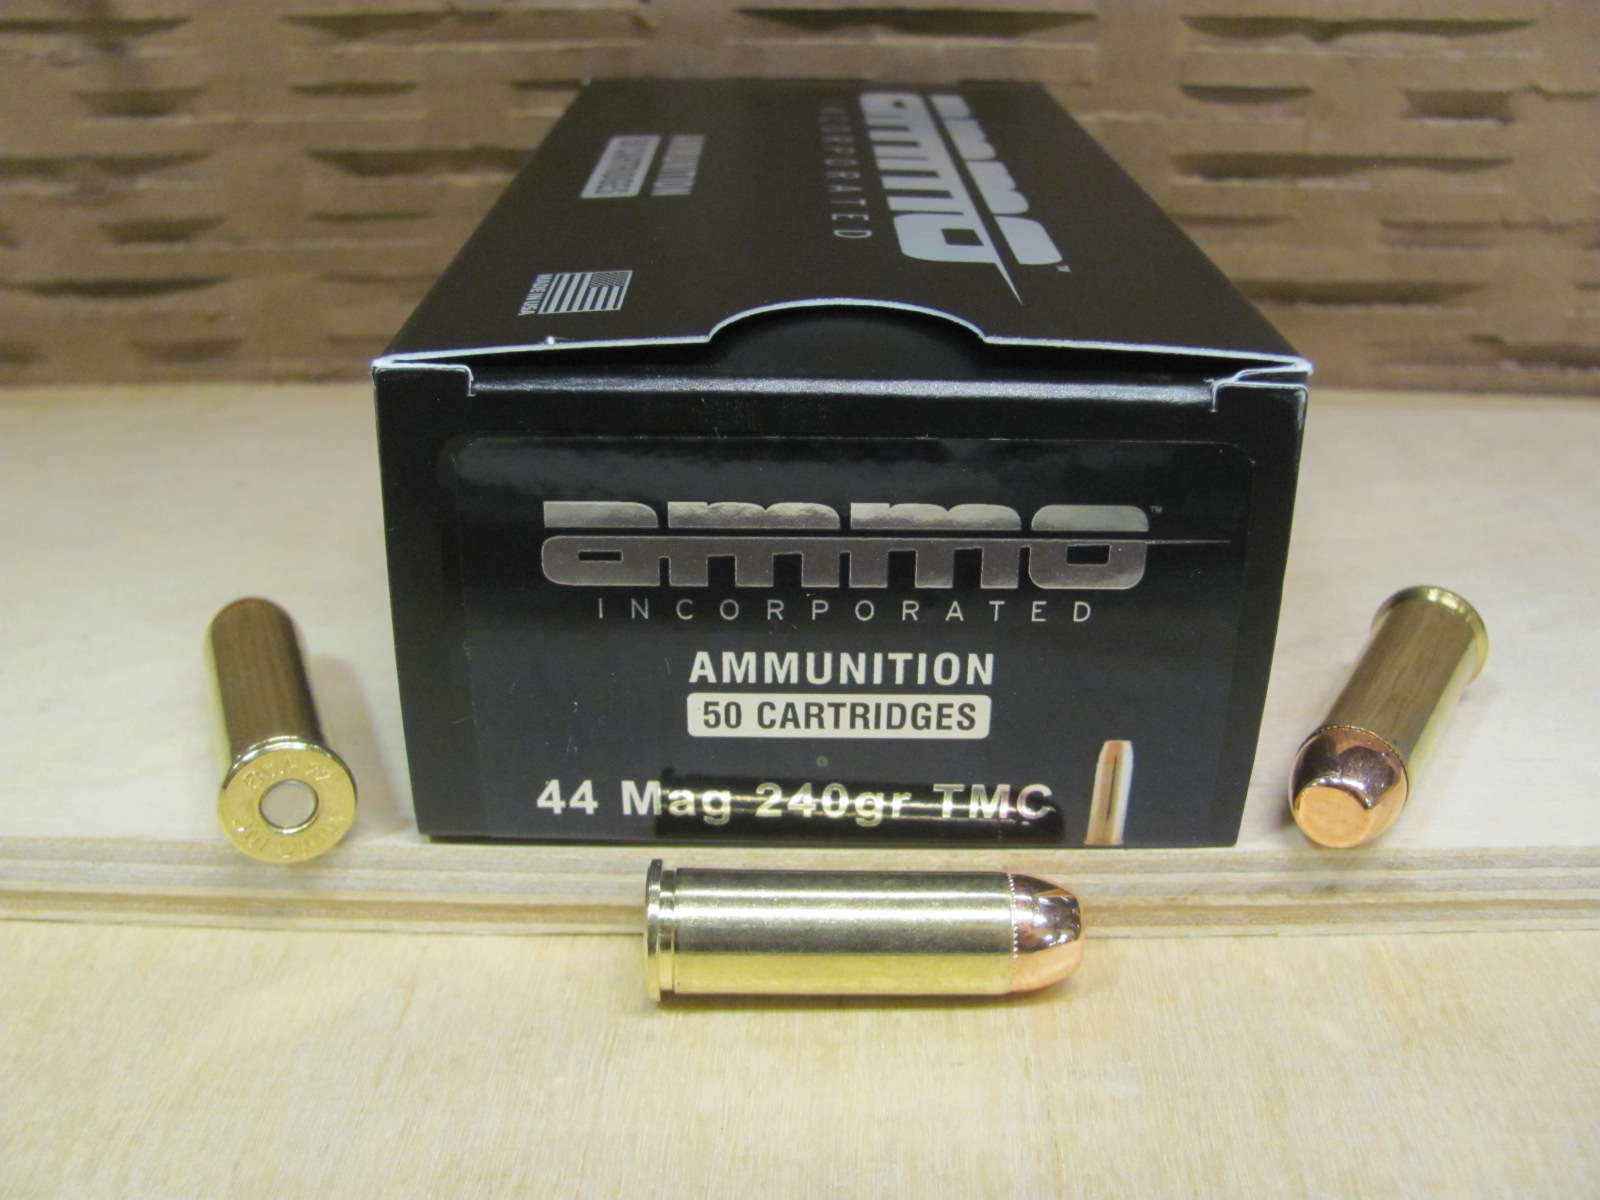 10mm magnum ammo